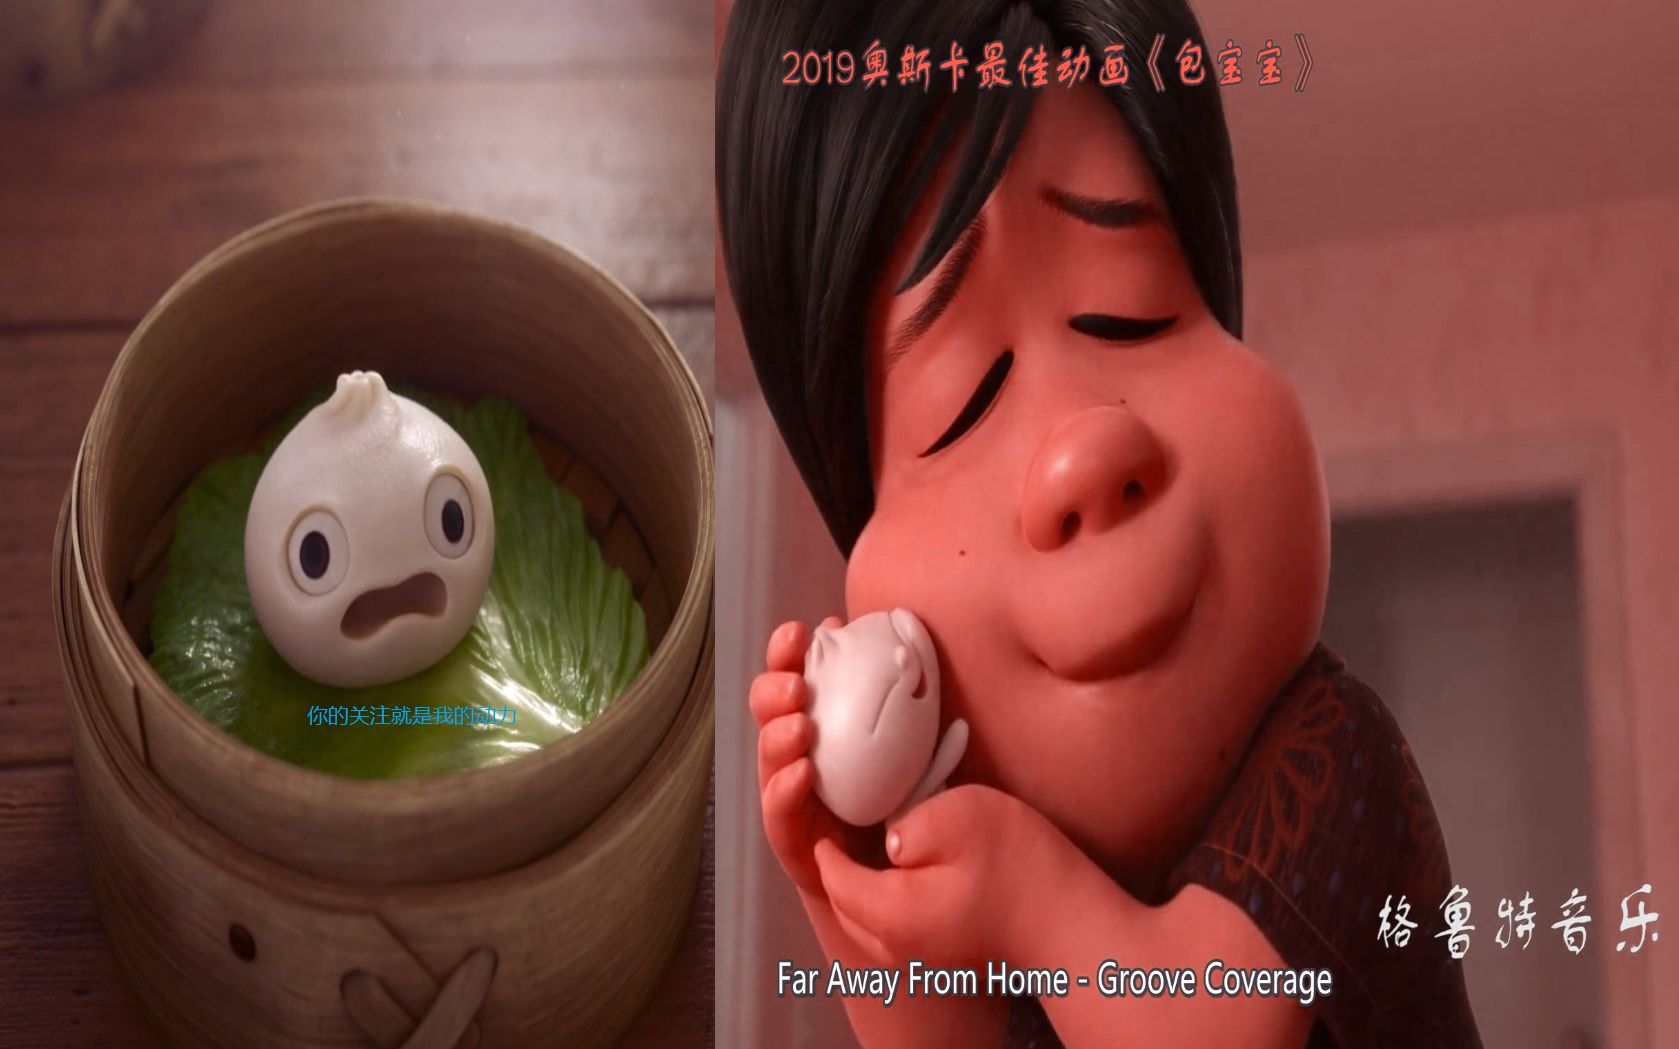 2019年奥斯卡最佳动画短片《包宝宝》,这屉"中国包子"征服了奥斯卡,也